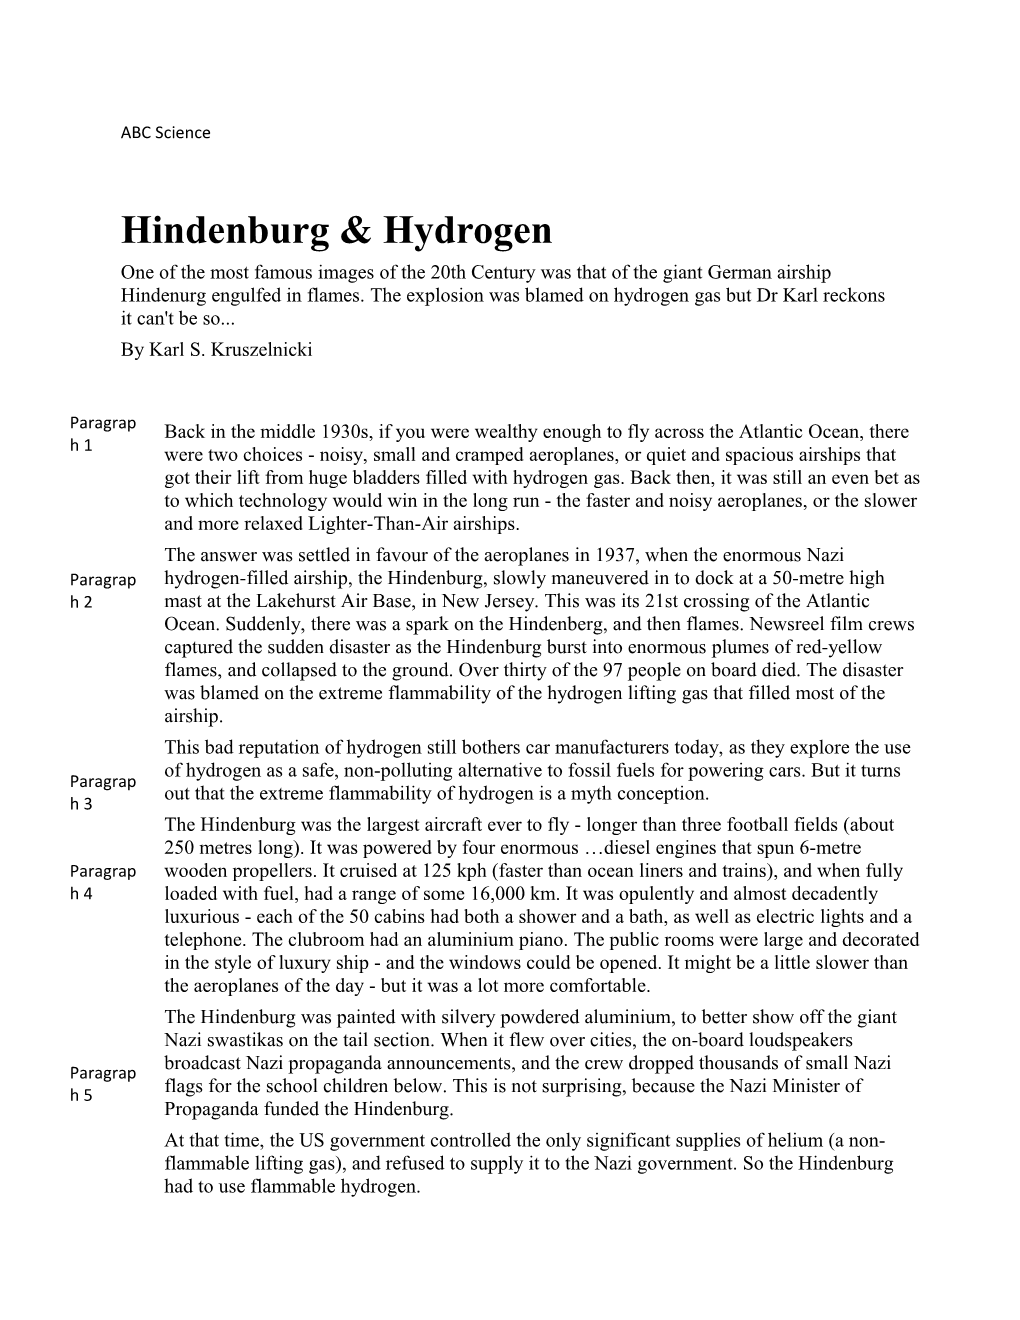 Hindenburg & Hydrogen